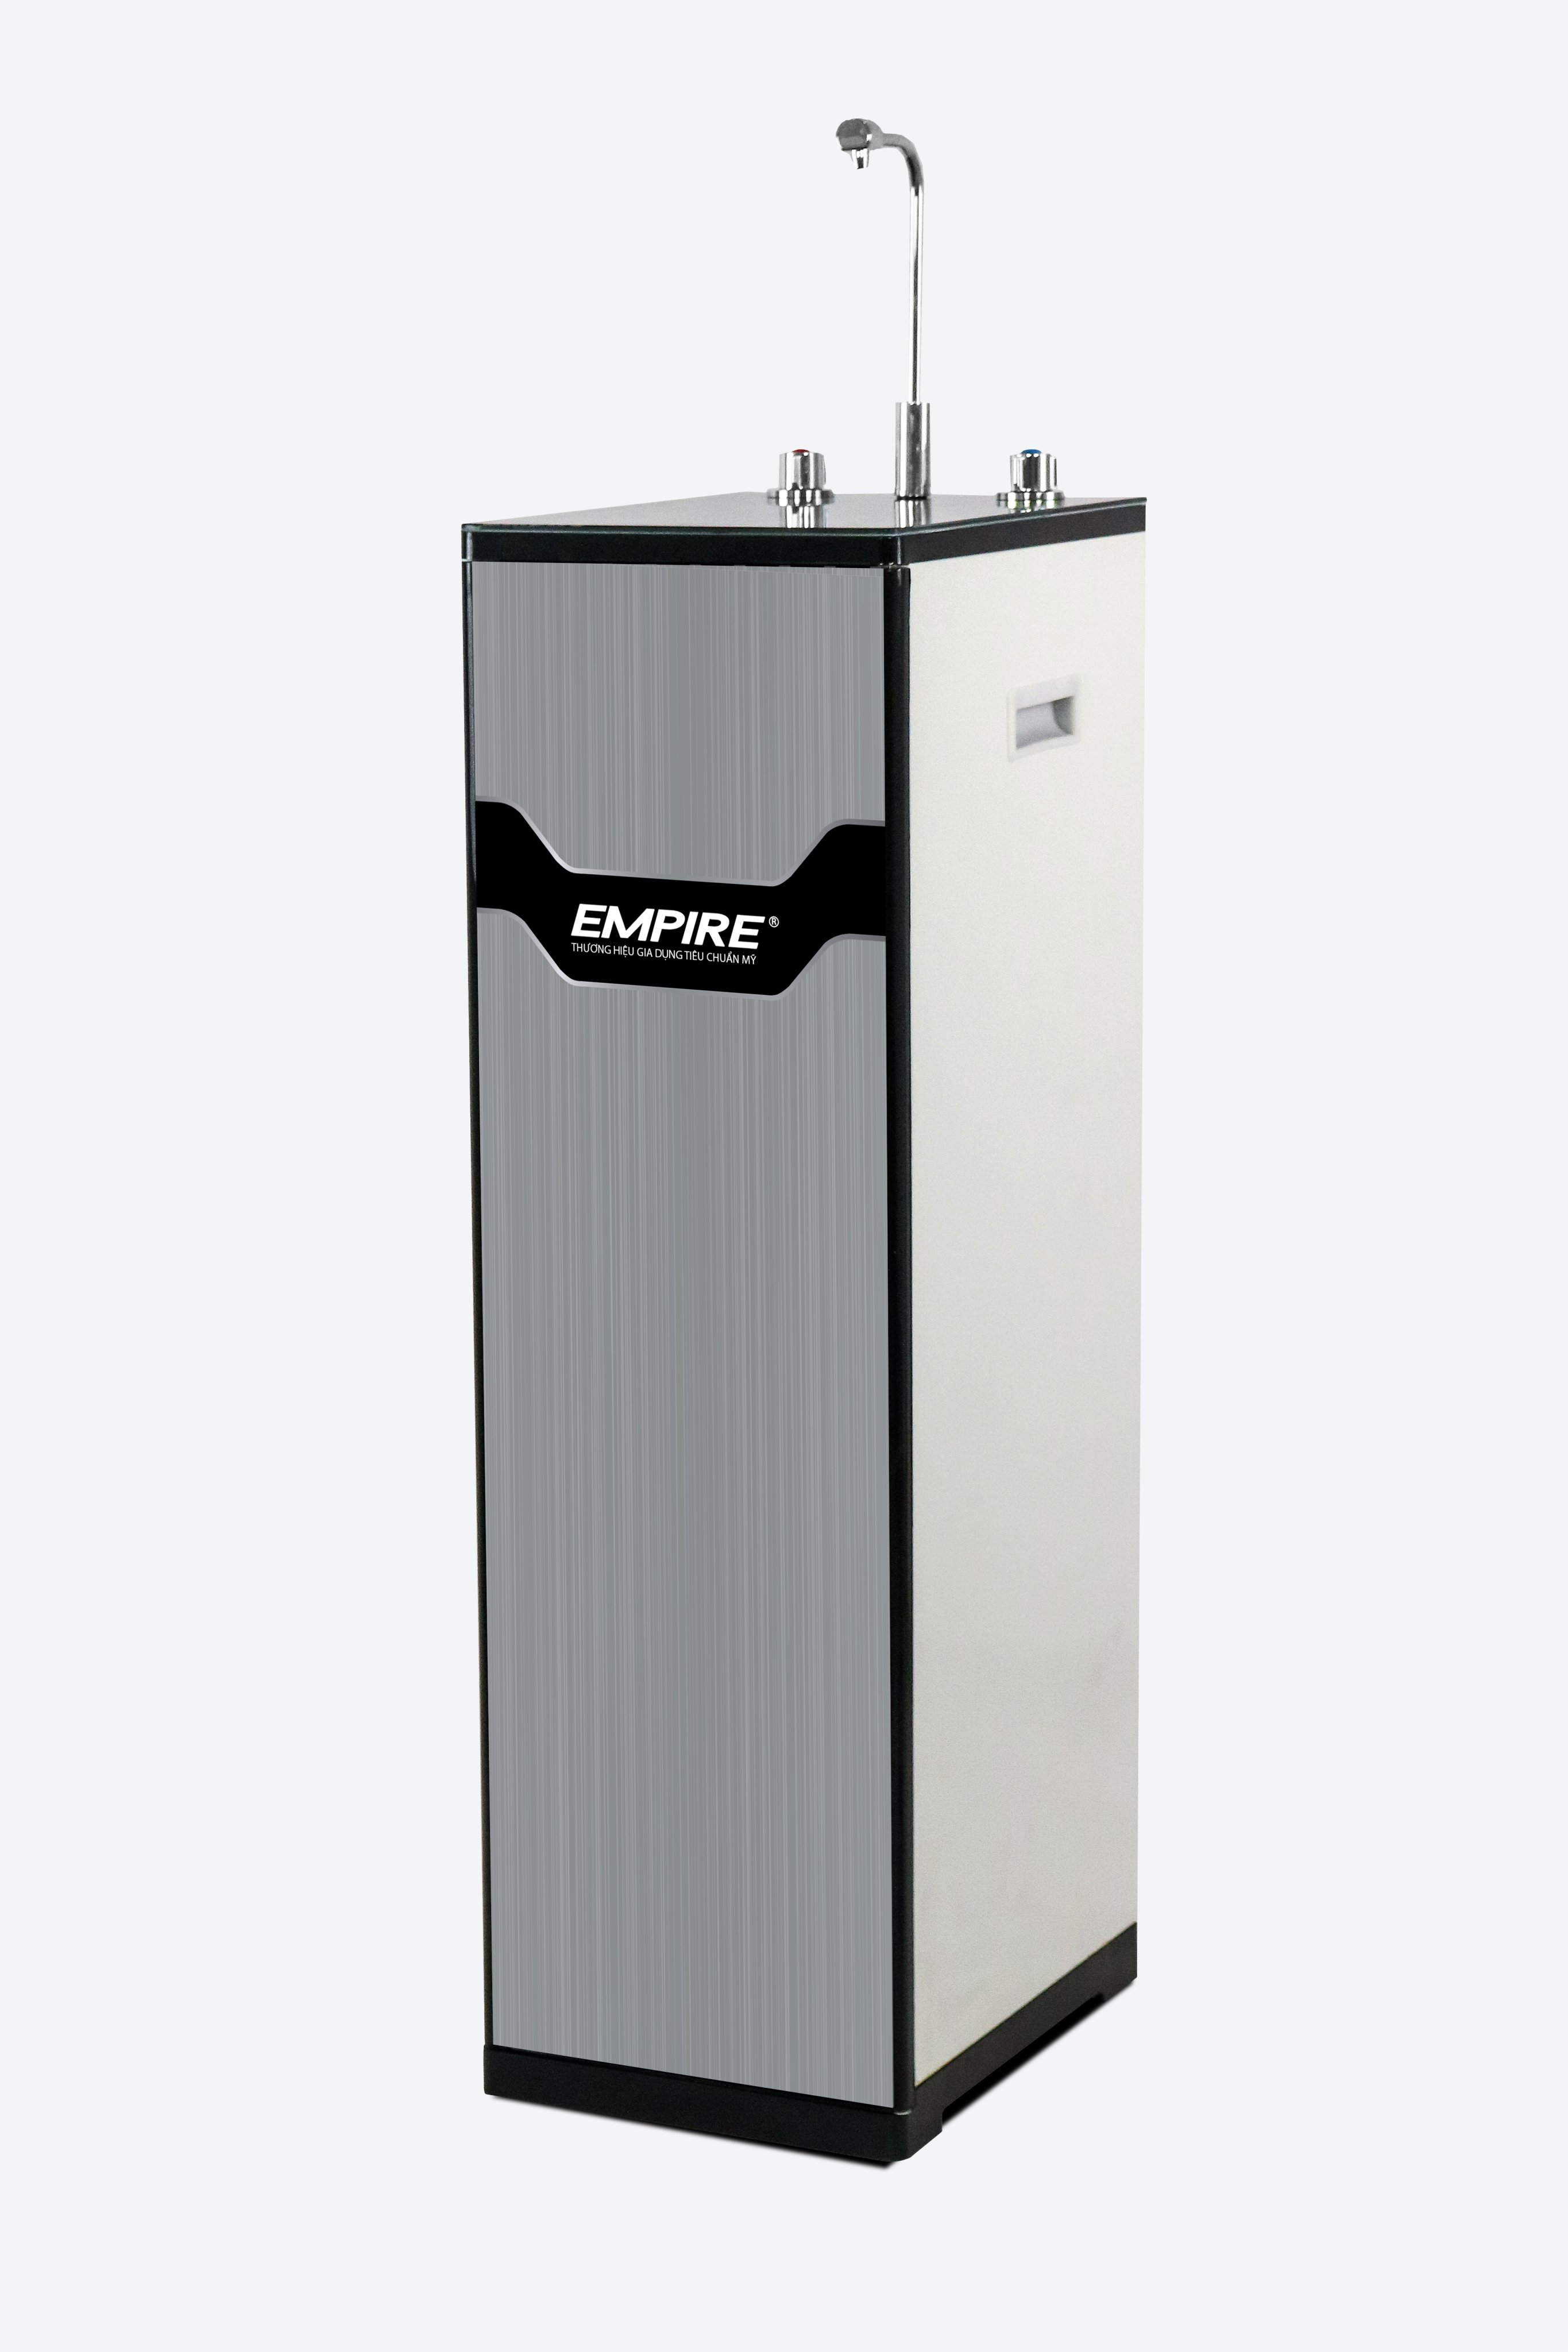 Máy lọc nước EMPIRE Hydrogen 2 chức năng Nóng - Nguội Model EPML038 - Hàng chính hãng.